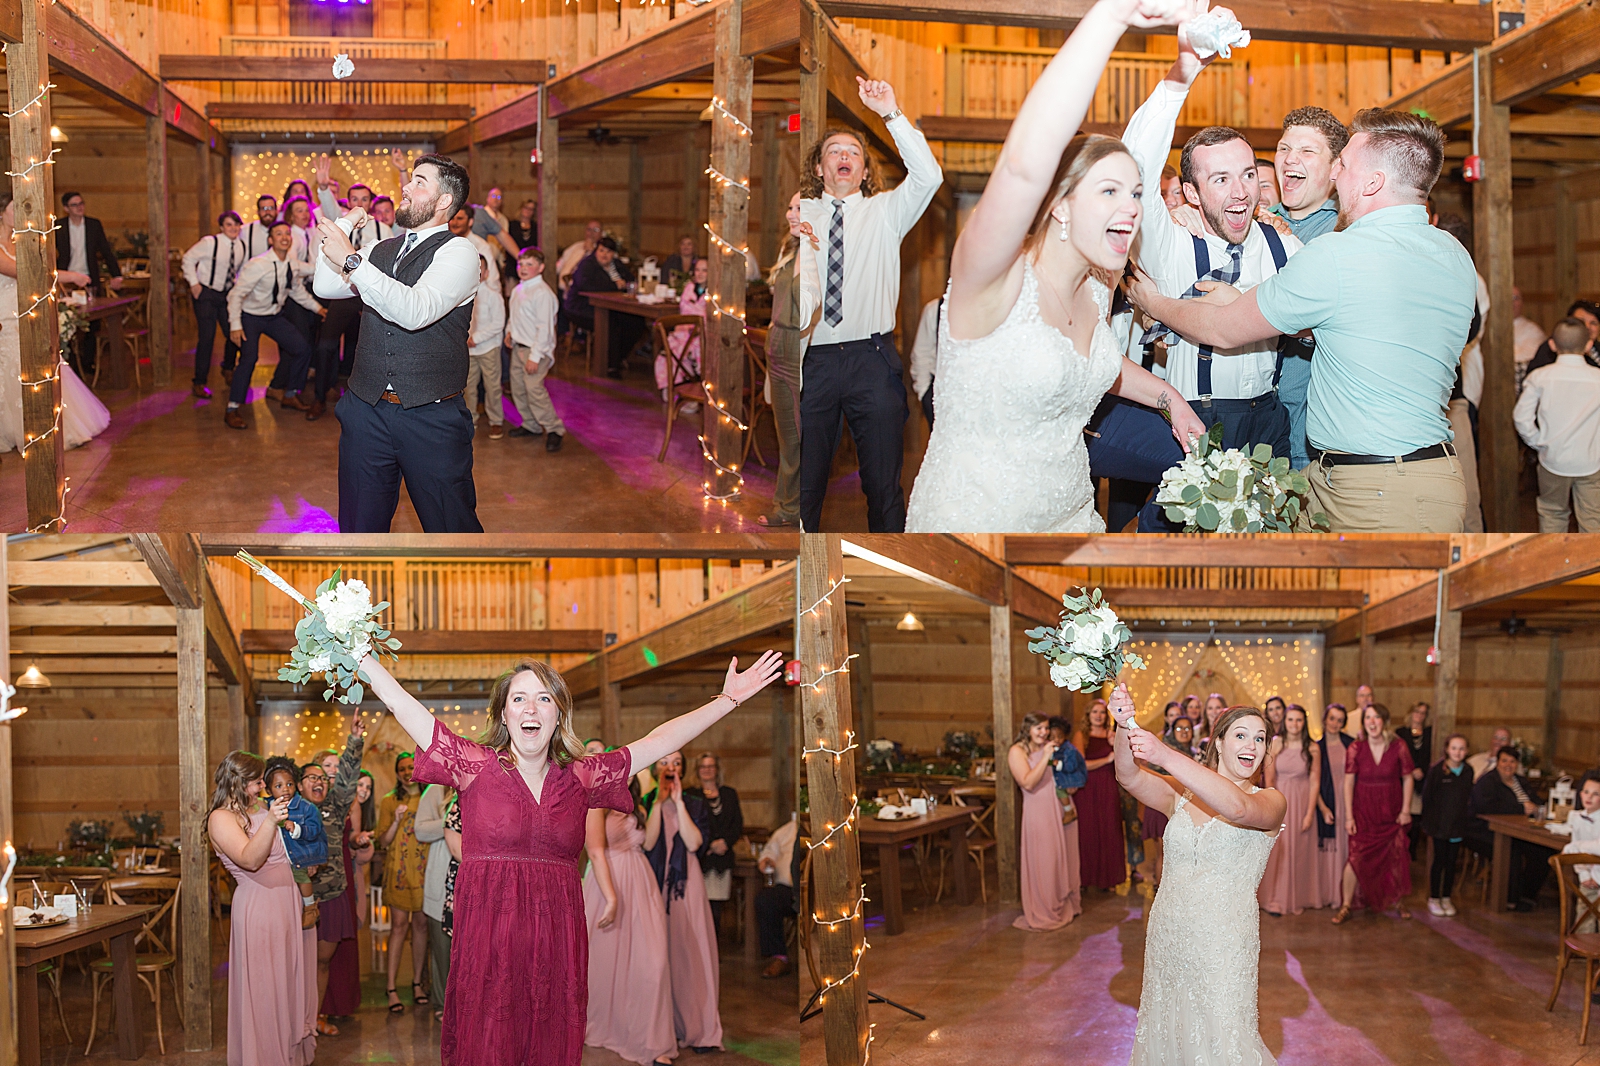 Macedonia Hills Wedding Reception Garter Toss and Bouquet Toss photos